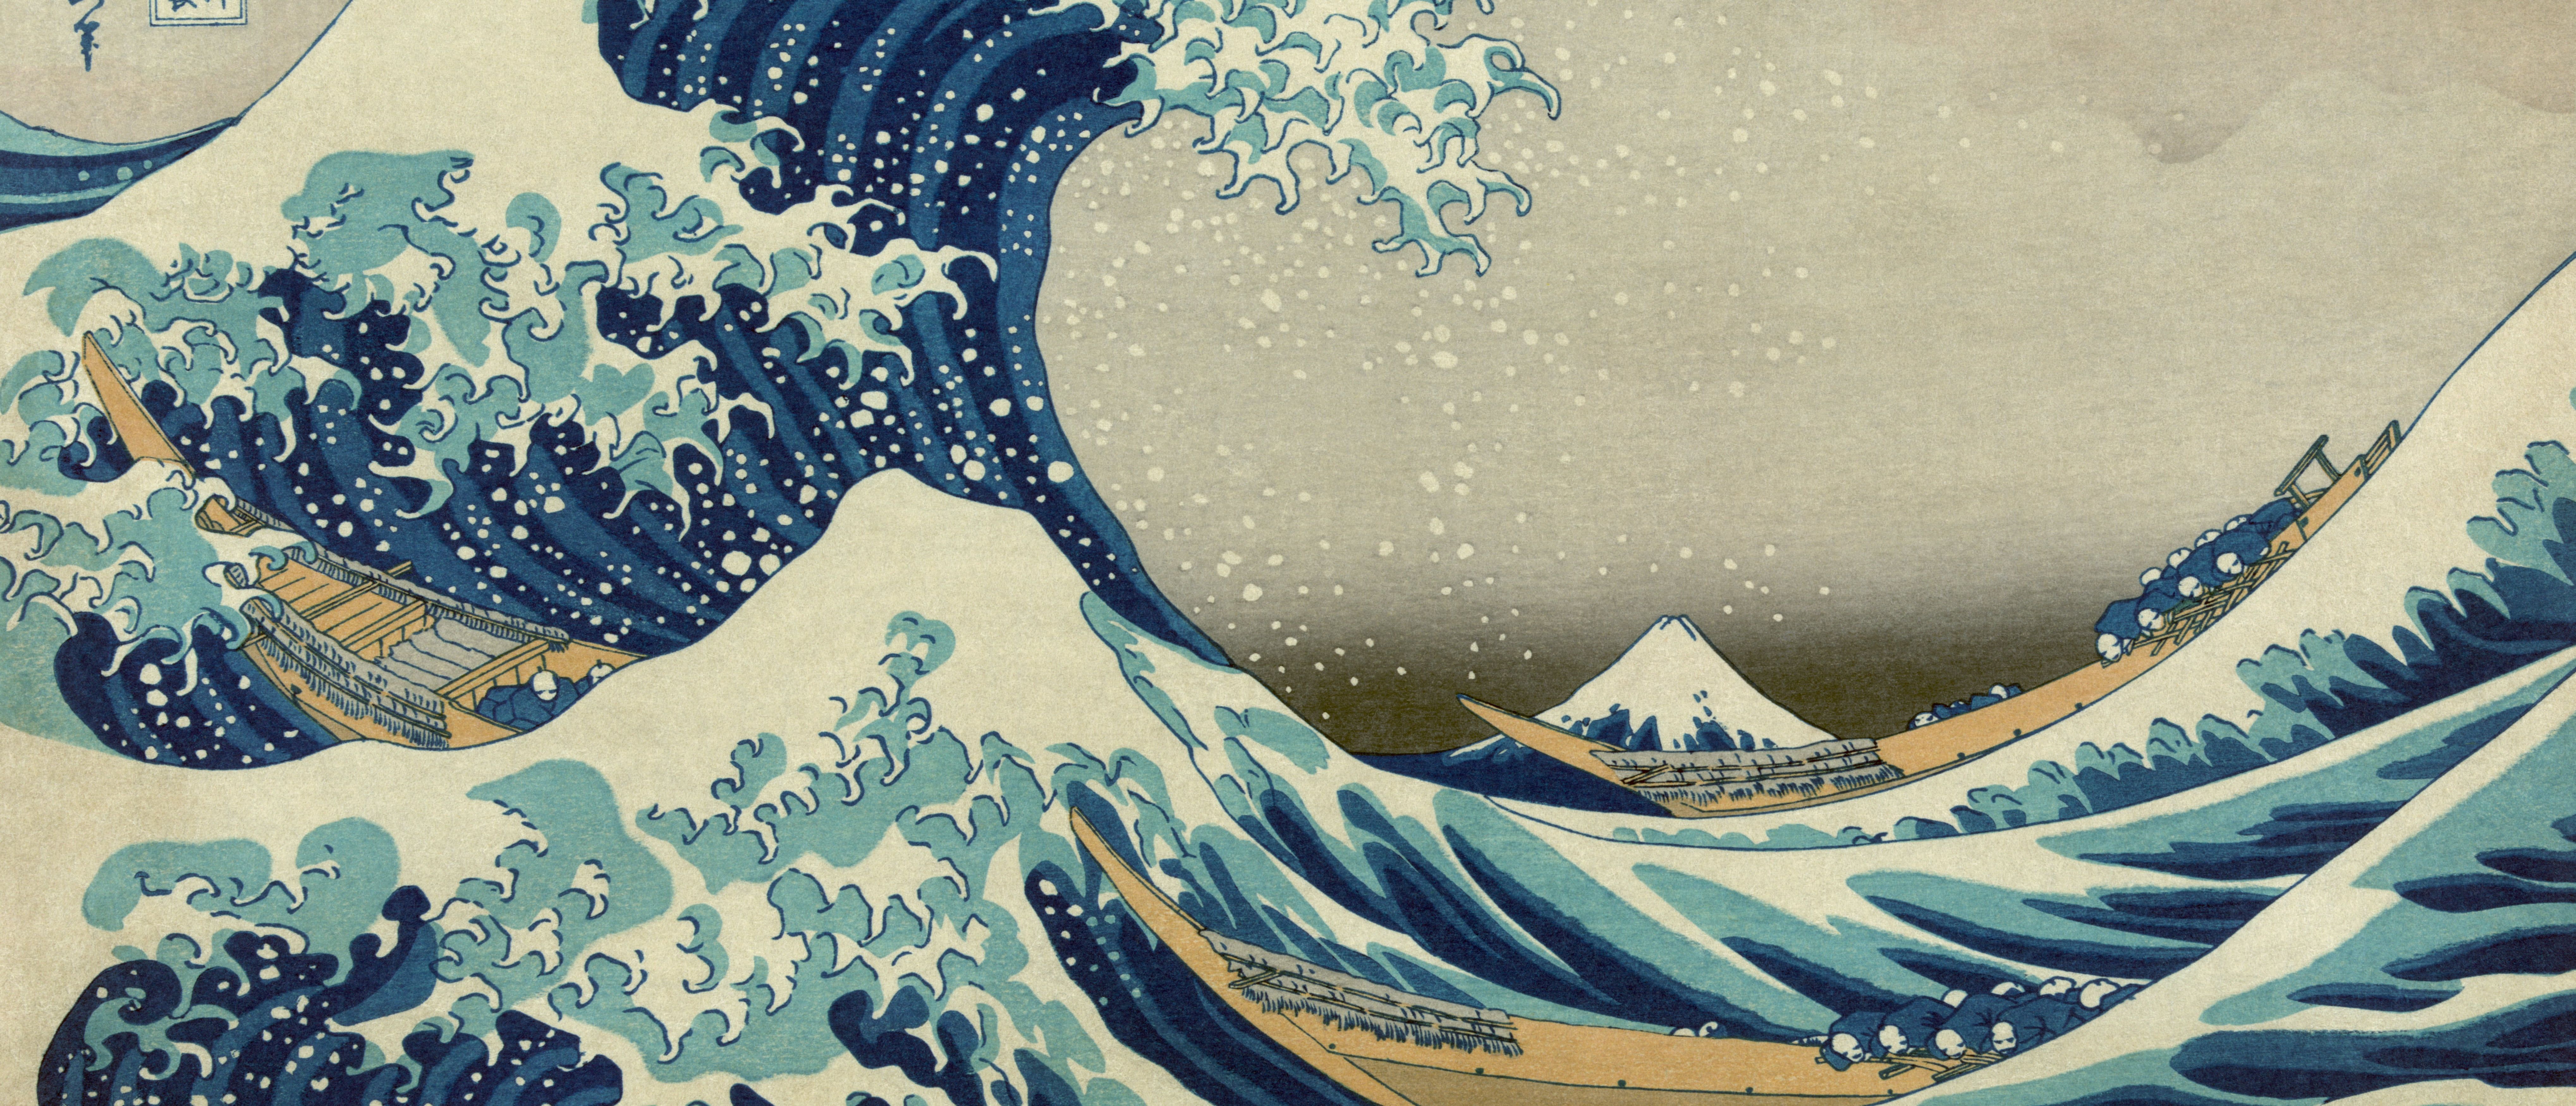 Ultra Wide #ultrawide #artwork K #wallpaper #hdwallpaper #desktop. Artwork, Great Wave Off Kanagawa, Wallpaper